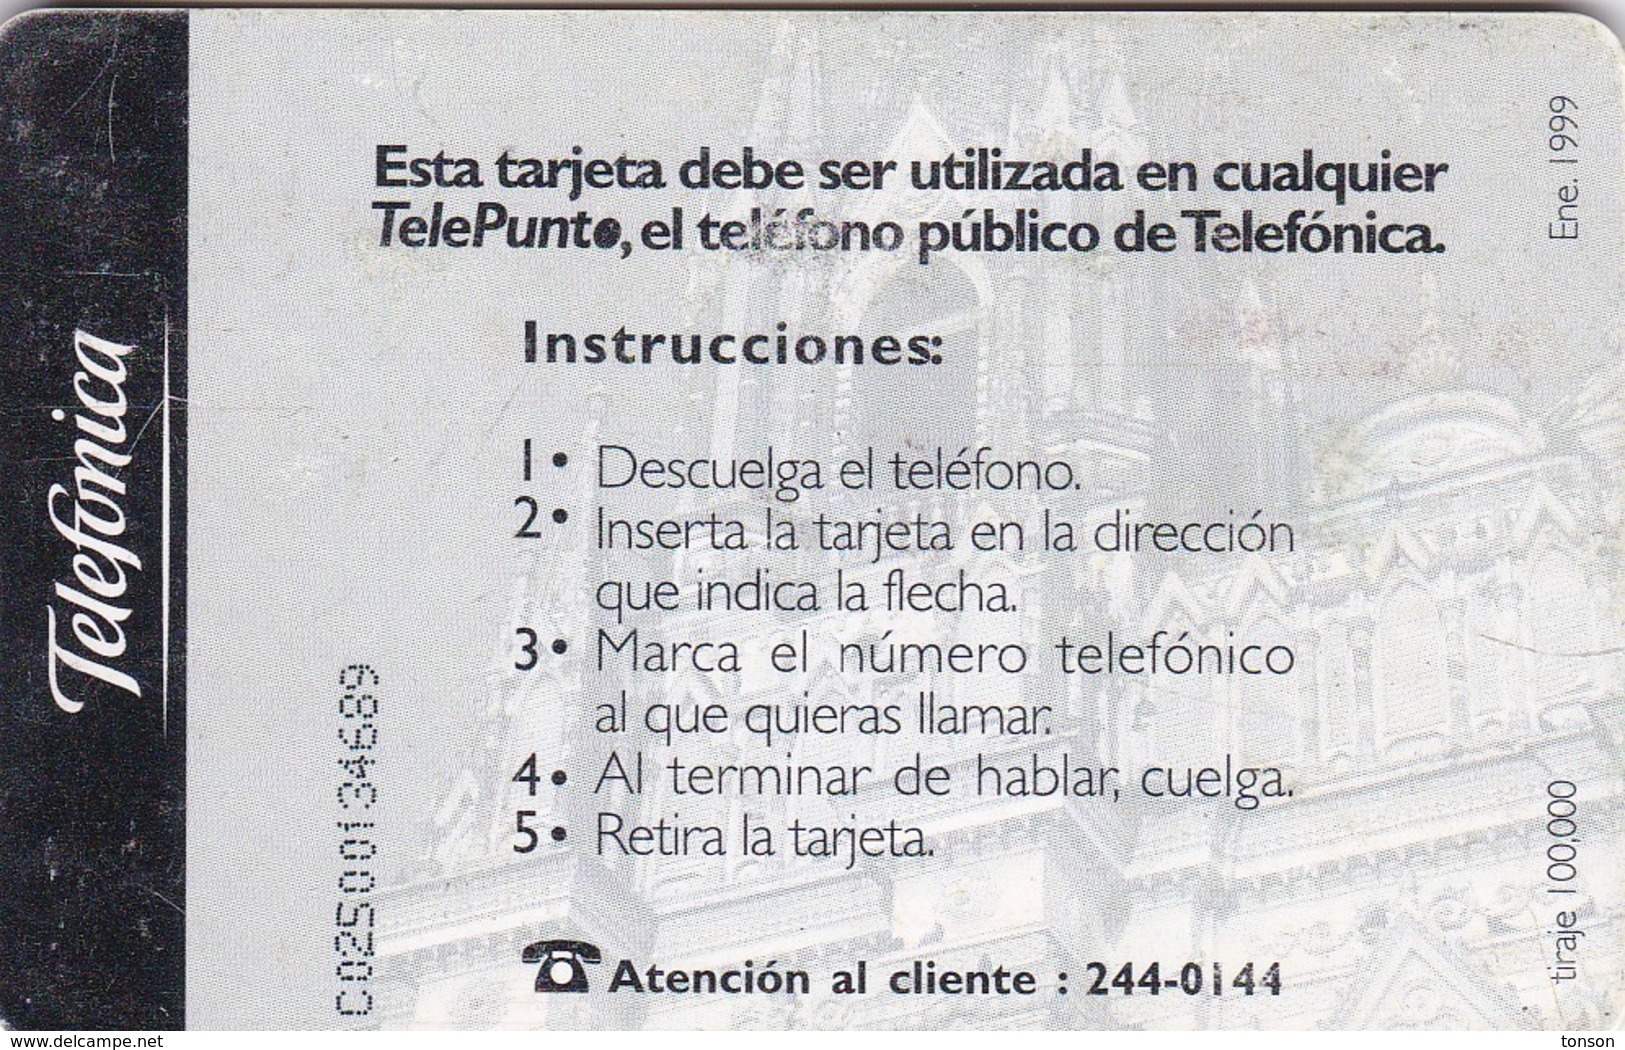 El Salvador, ELS-Telepunto-01?,  Catedral De Santa Ana, 2 Scans.    With Red Lines, Not In Colnect Catalogue - El Salvador